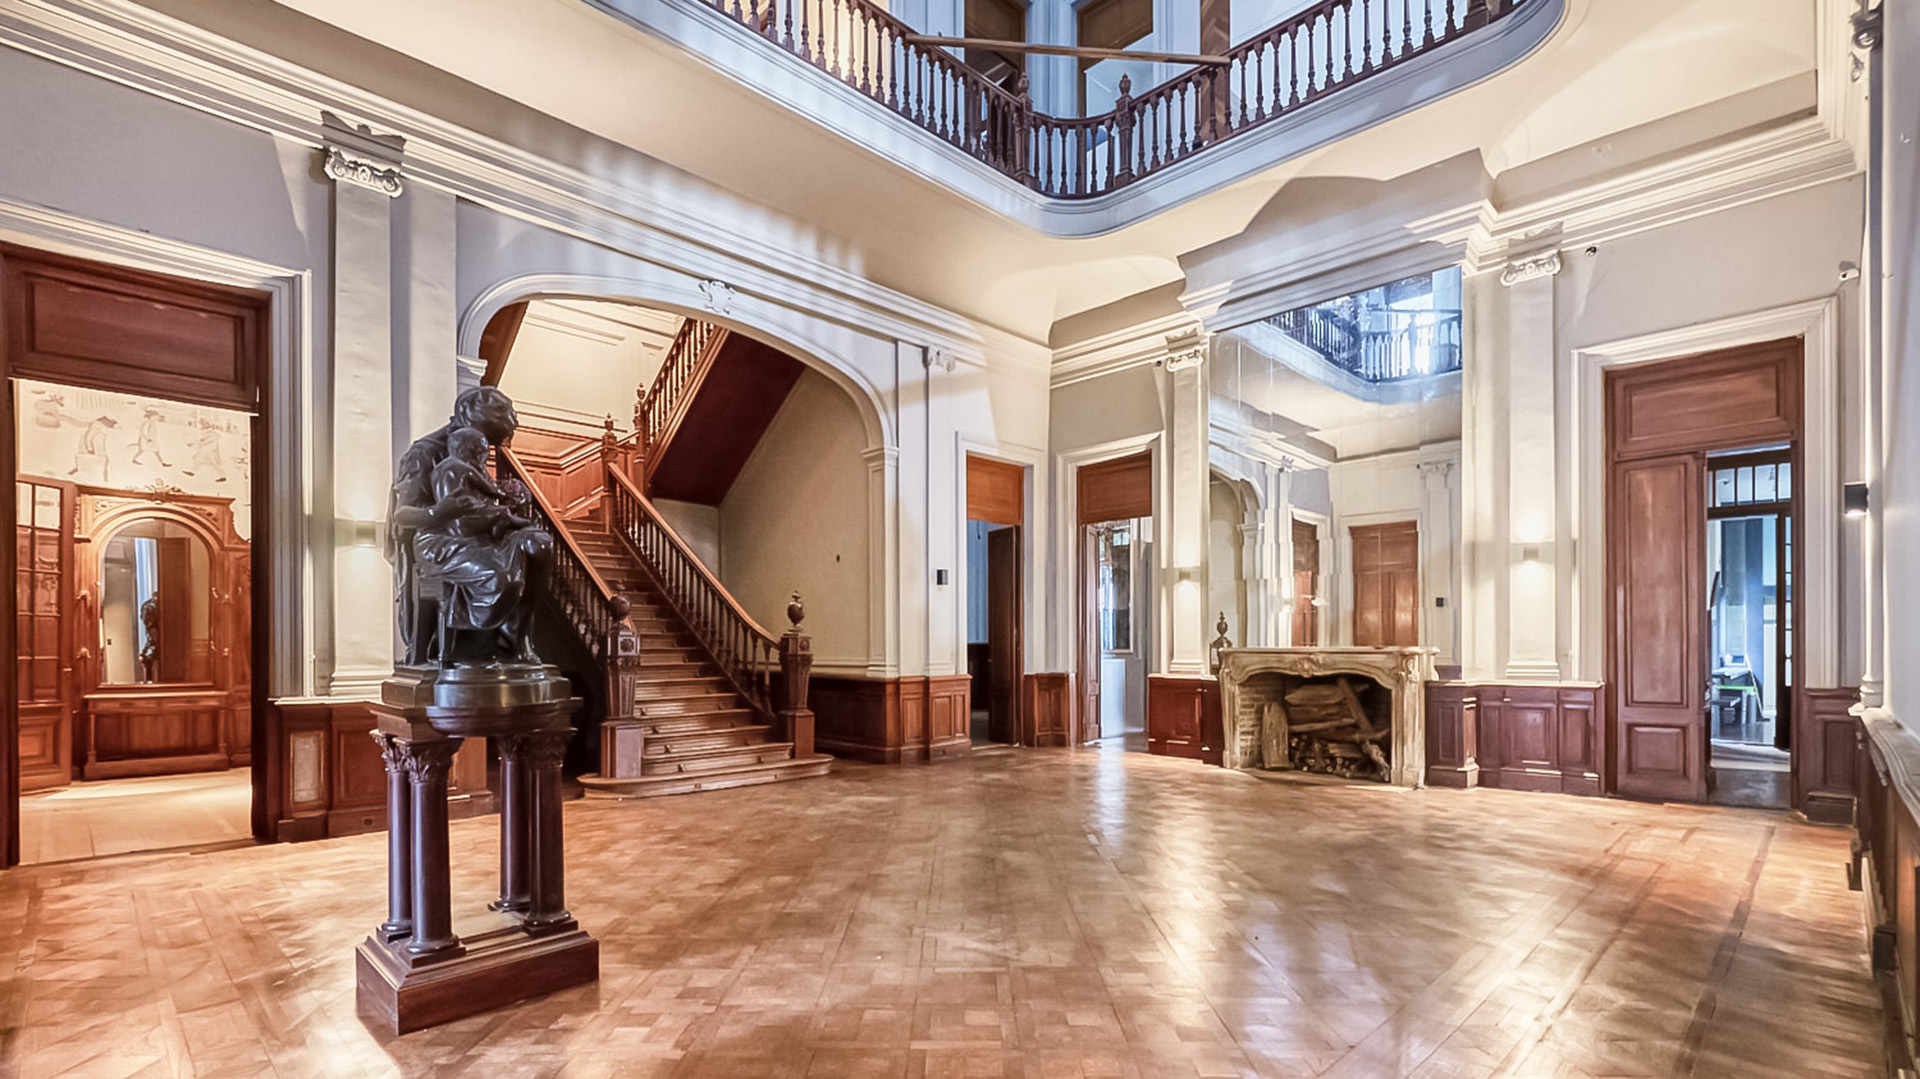 Hall de acceso y distribución, de diseño señorial y barroco francés